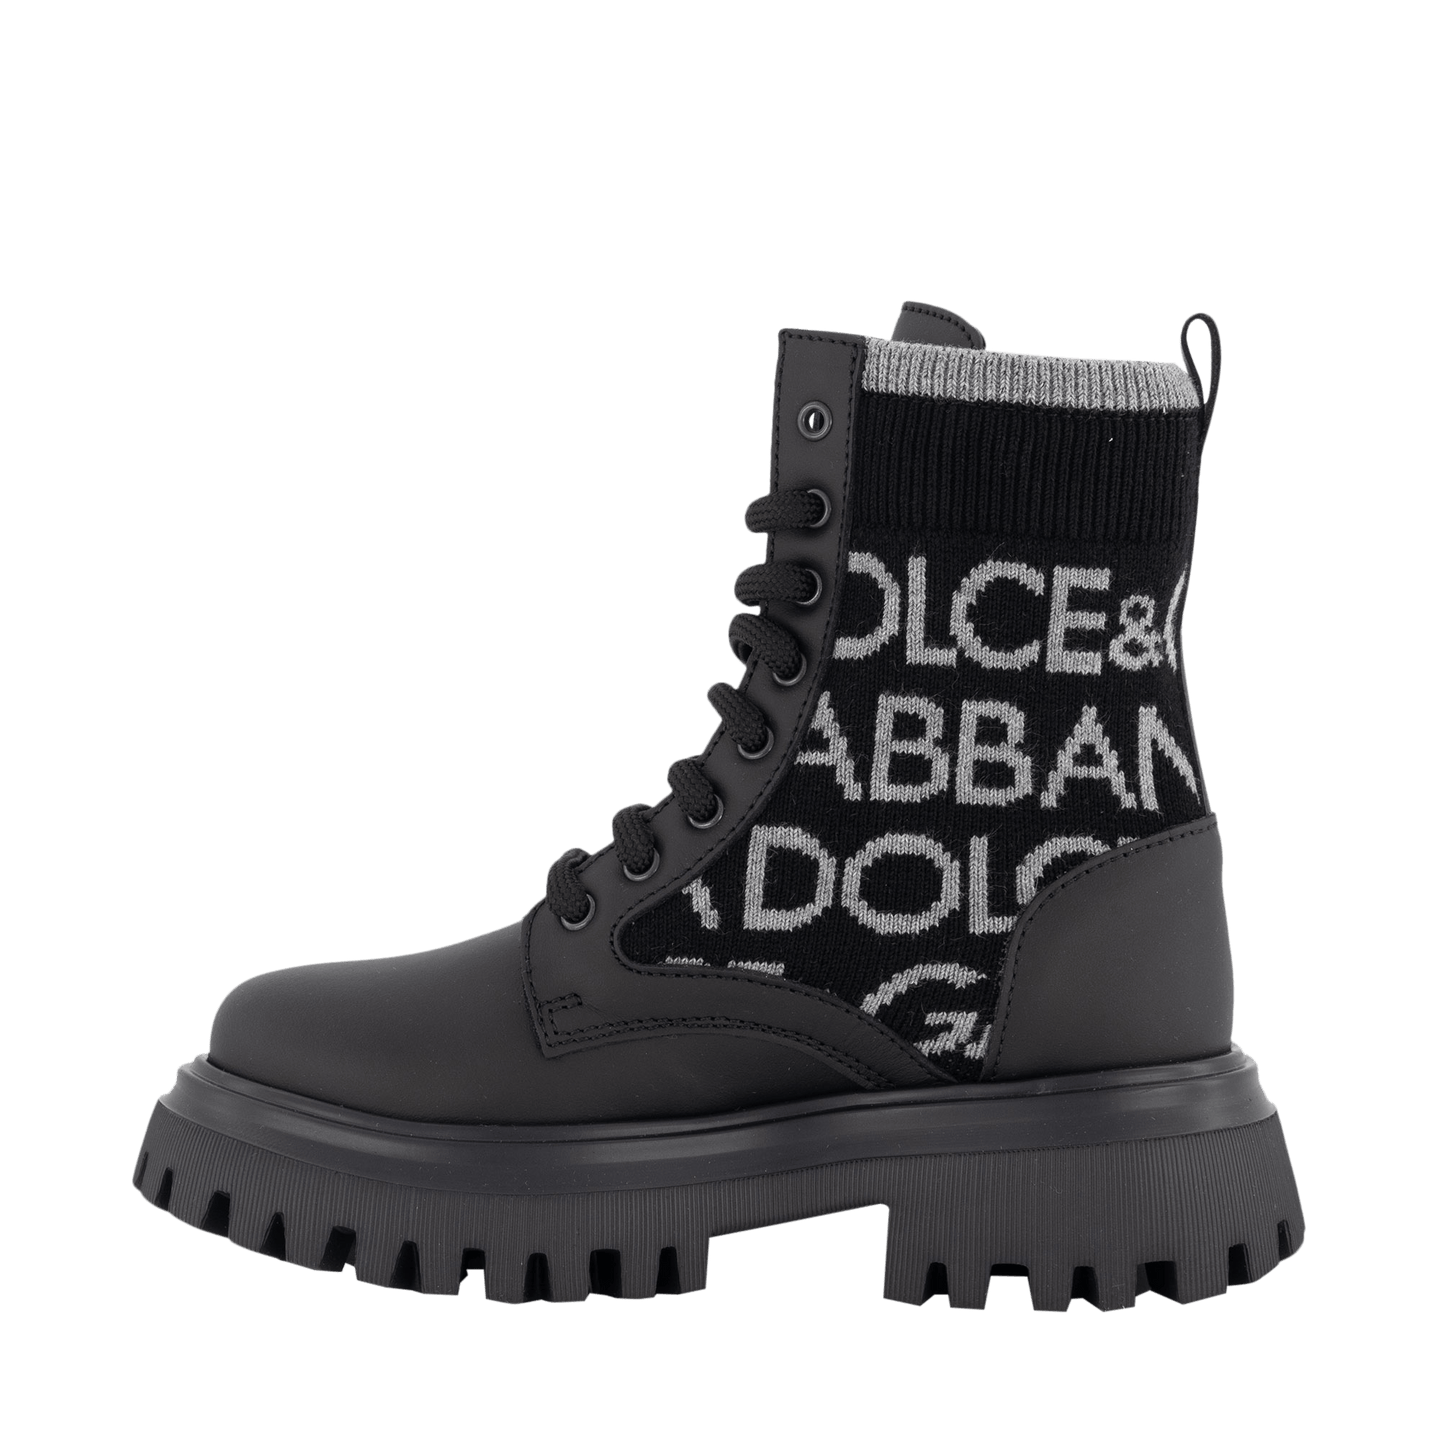 Dolce & Gabbana Kinder Unisex Laarzen Zwart 27